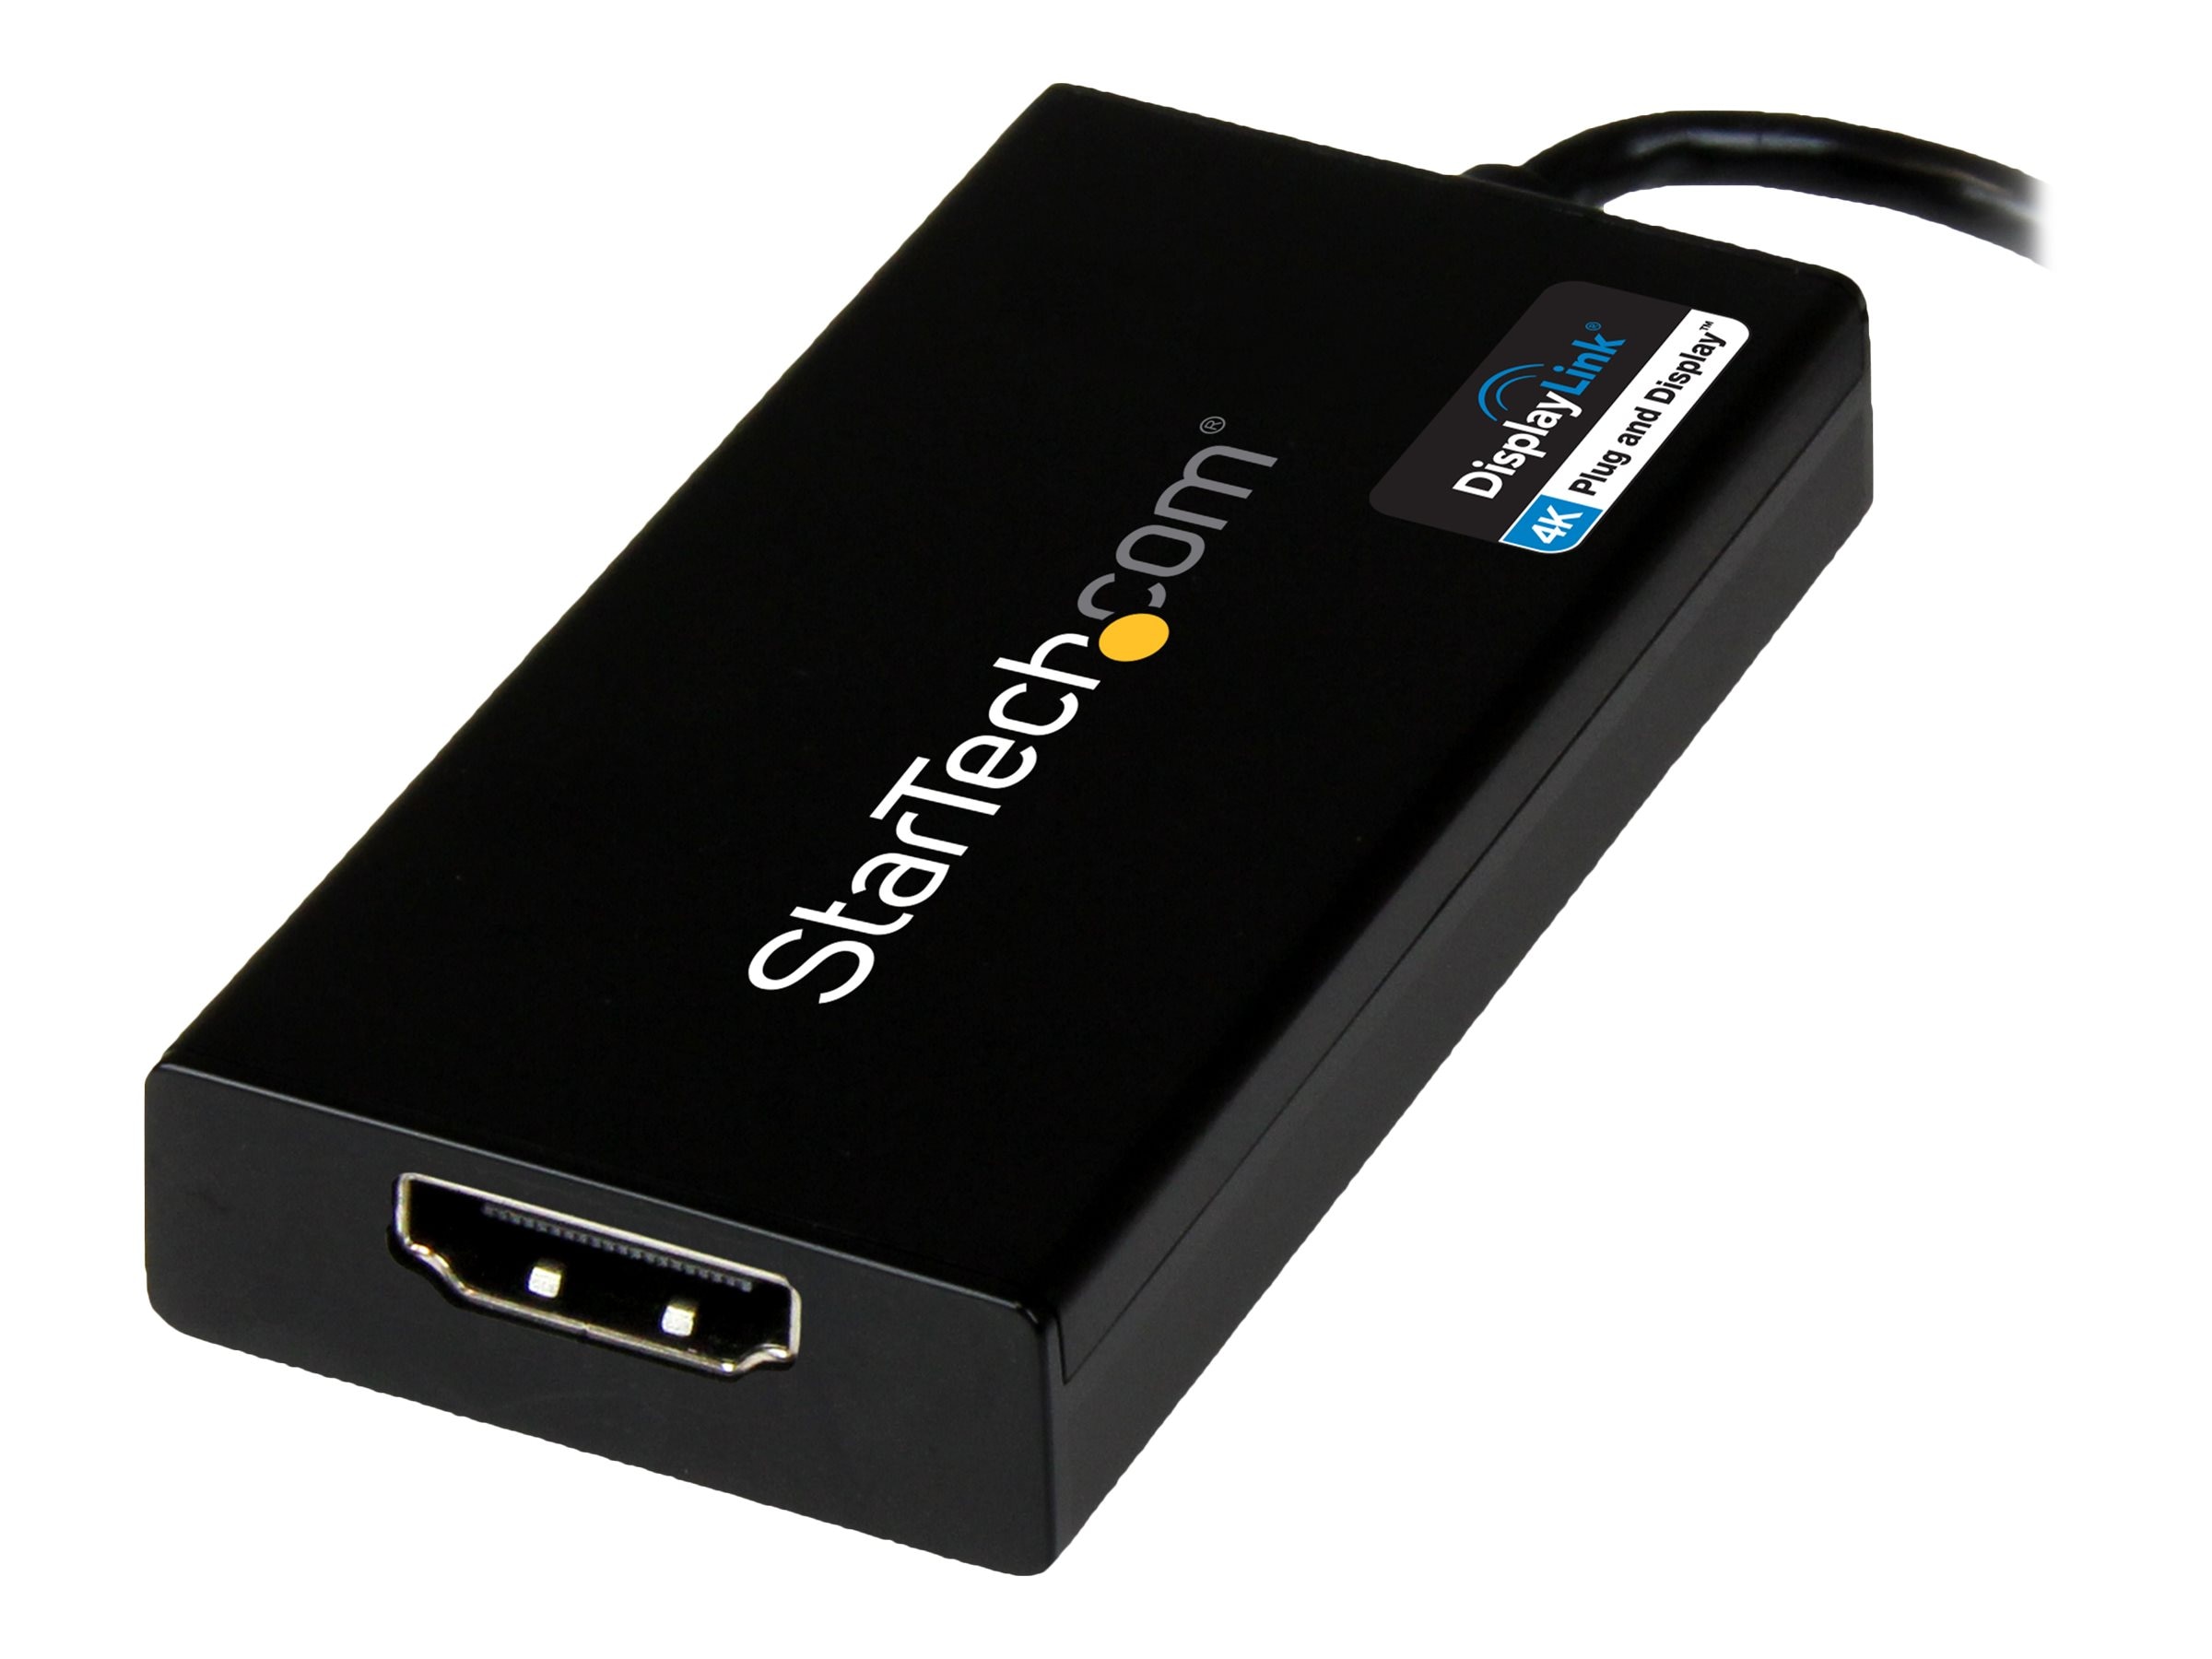 StarTech.com USB 3.0 to HDMI Adapter - 4K - External Video Graphics Card